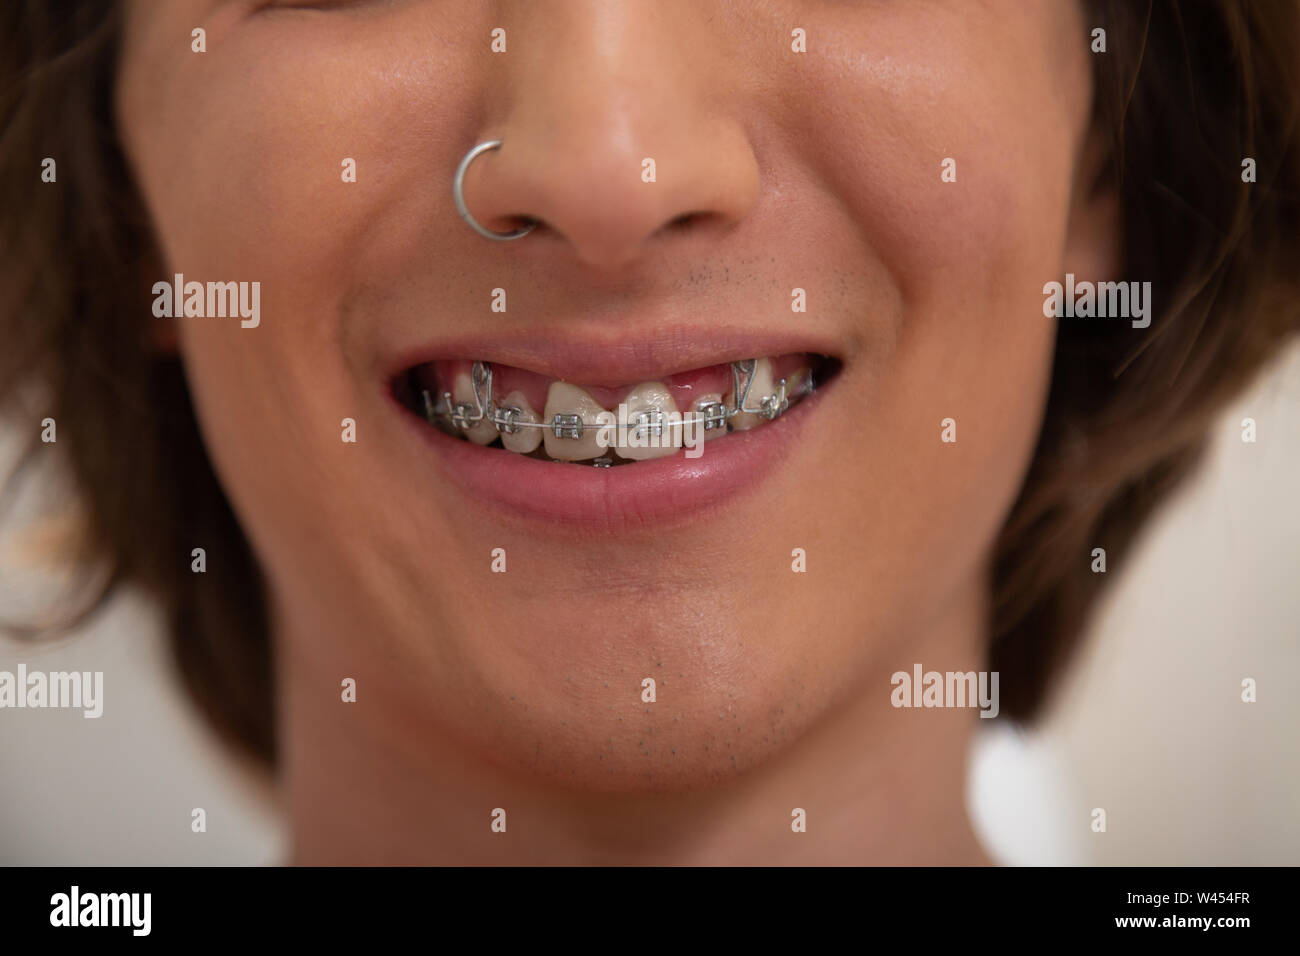 Oral piercing immagini e fotografie stock ad alta risoluzione - Alamy